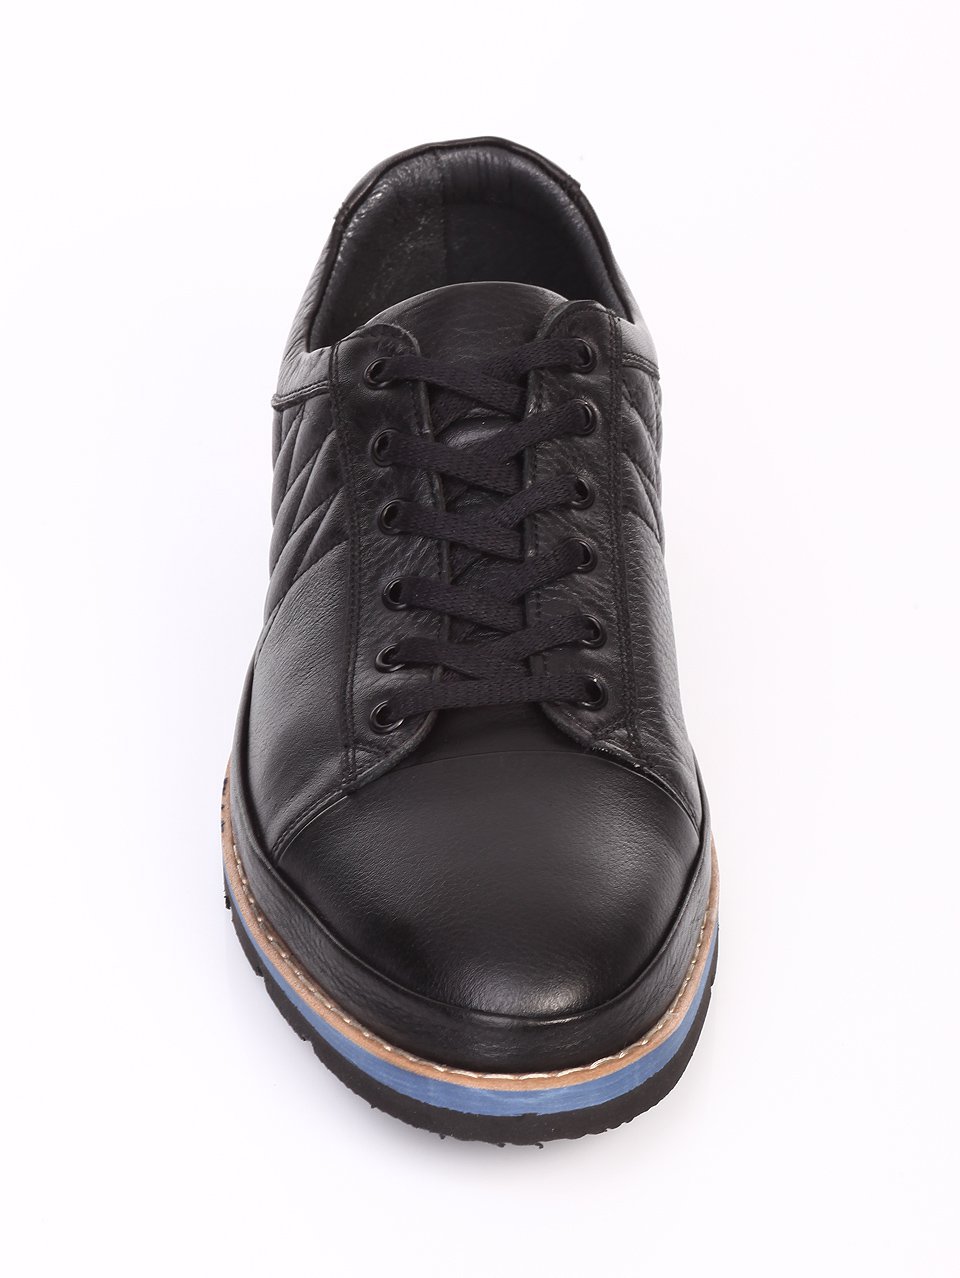 Ежедневни мъжки обувки от естествена кожа в черно 7AT-16887 black